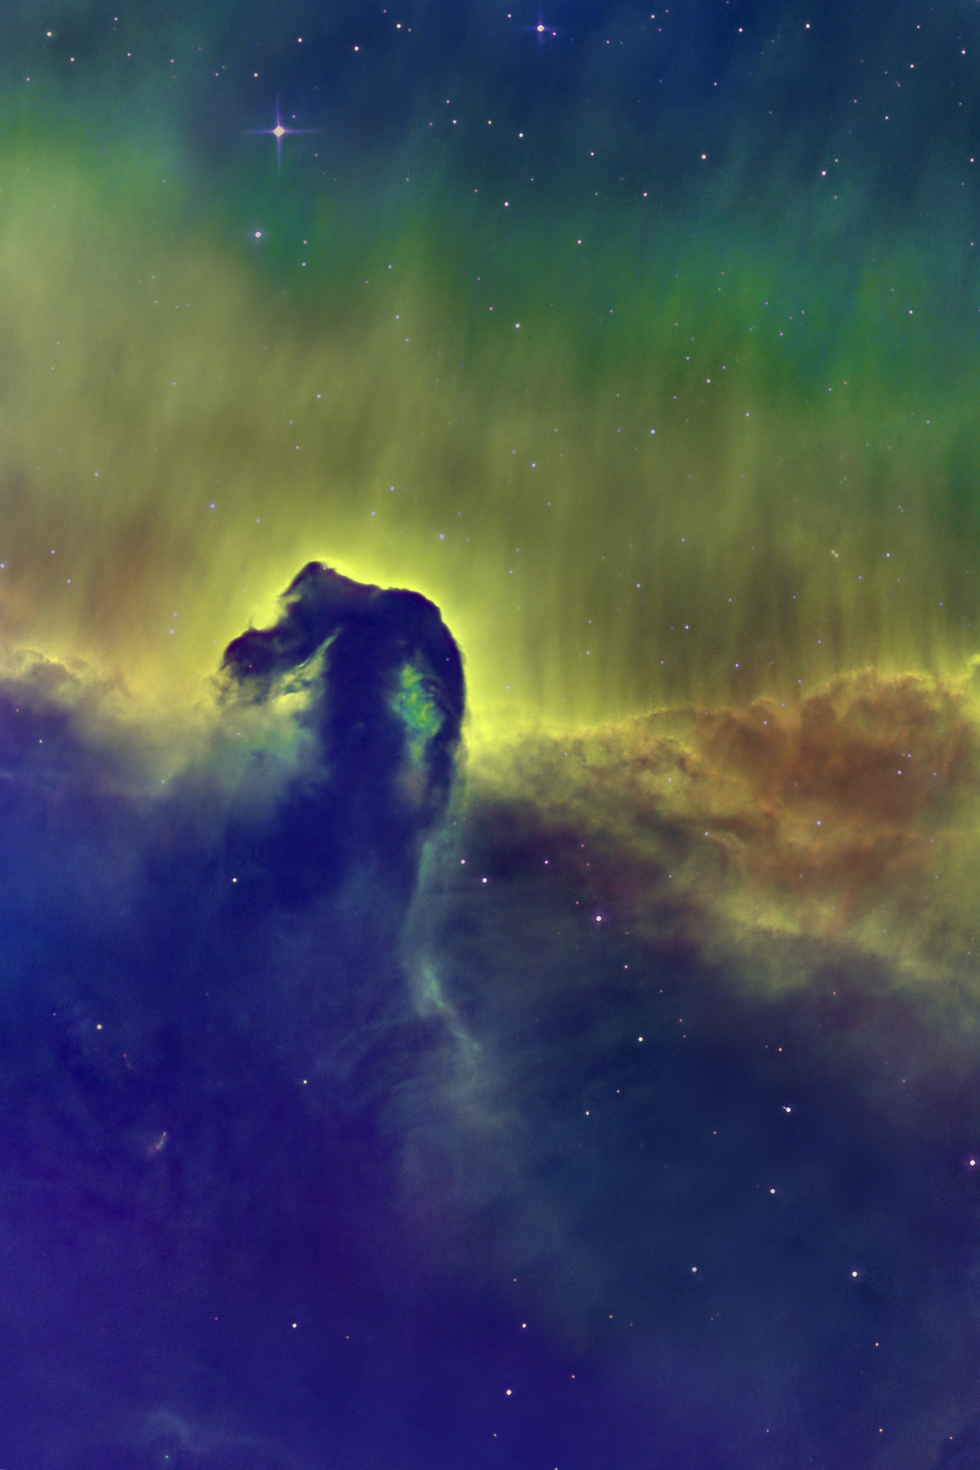 B33 Horsehead Nebula